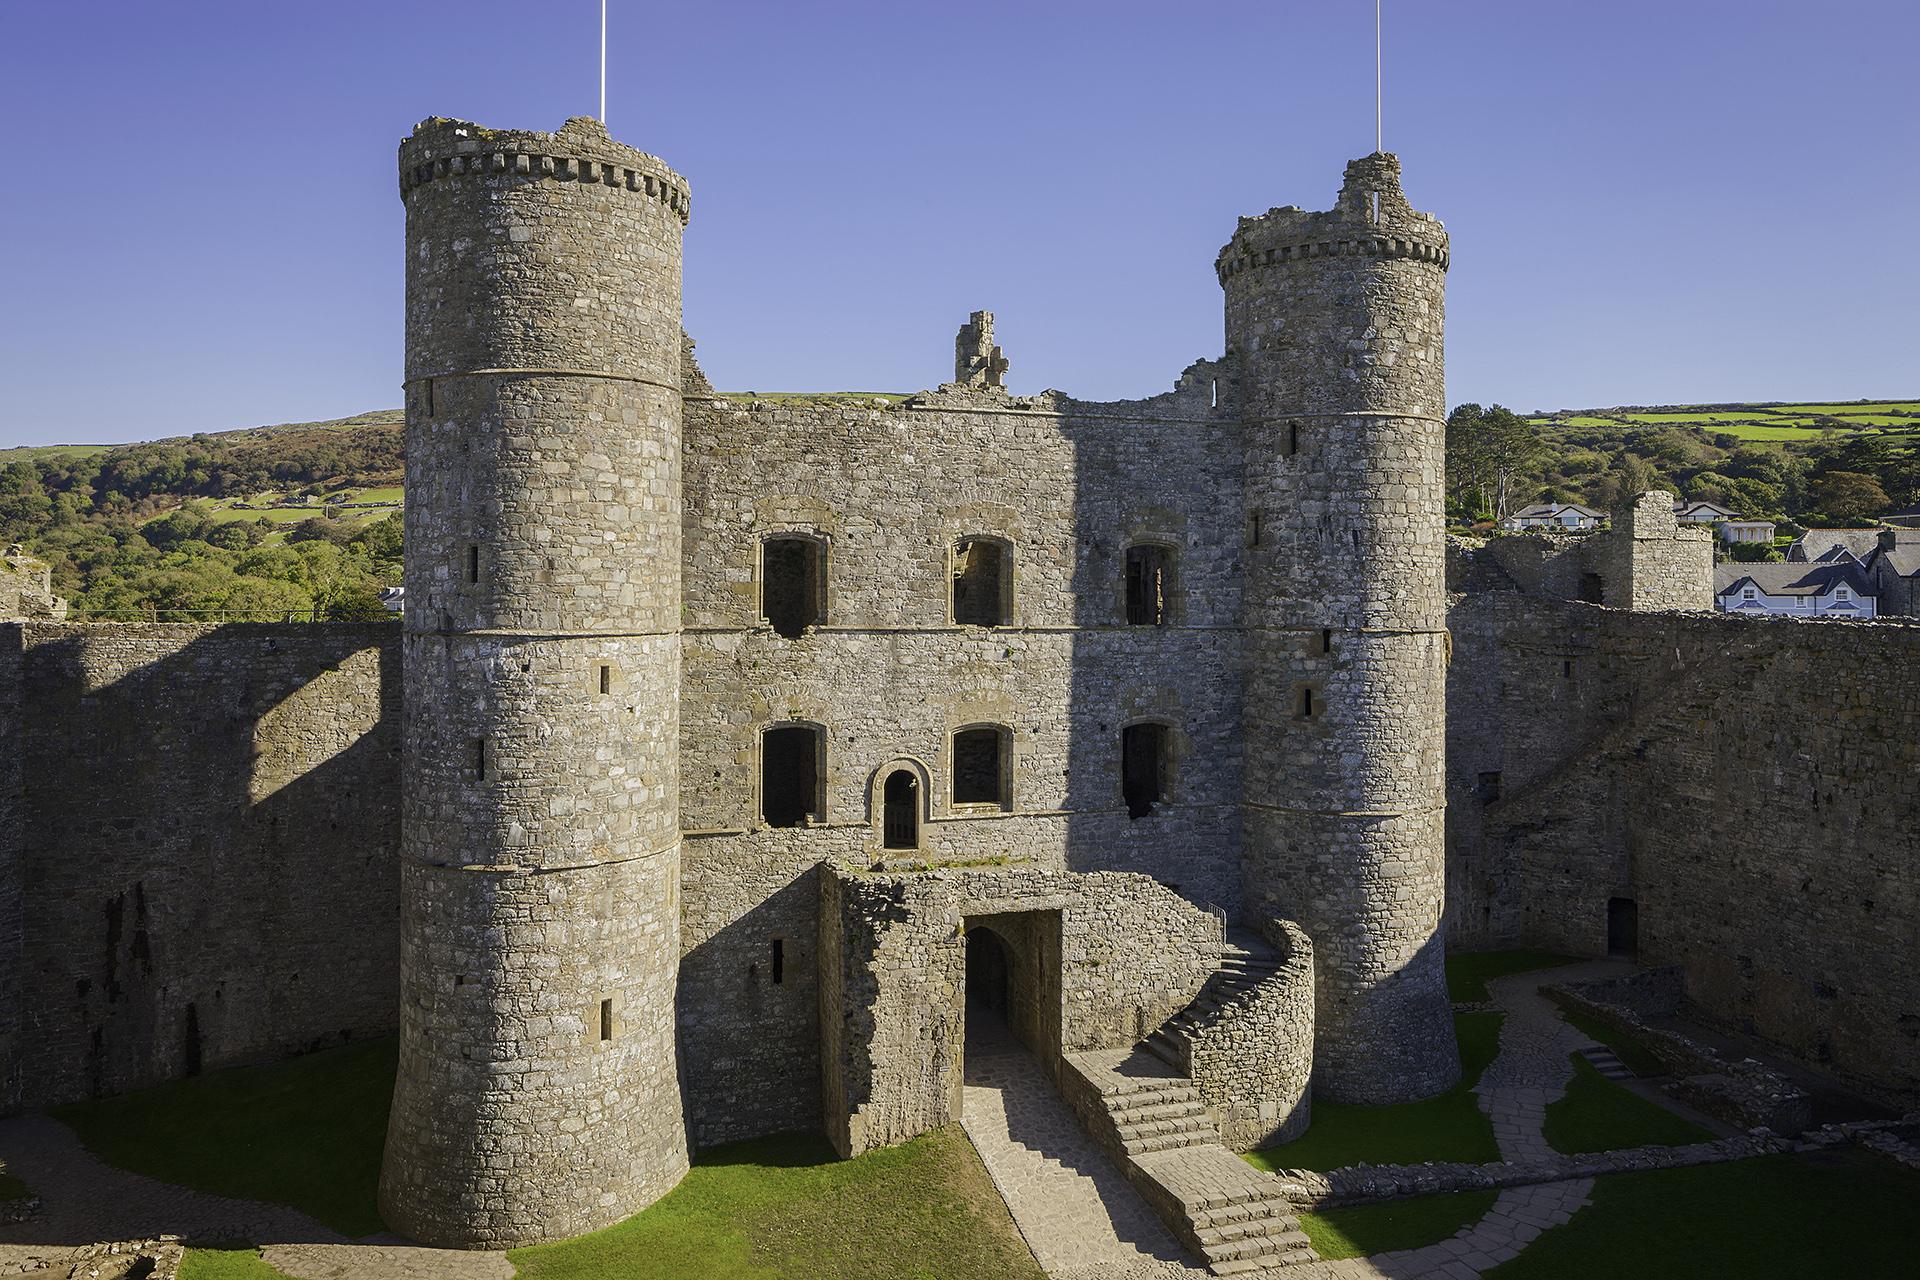 Castell Harlech/Harlech Castle